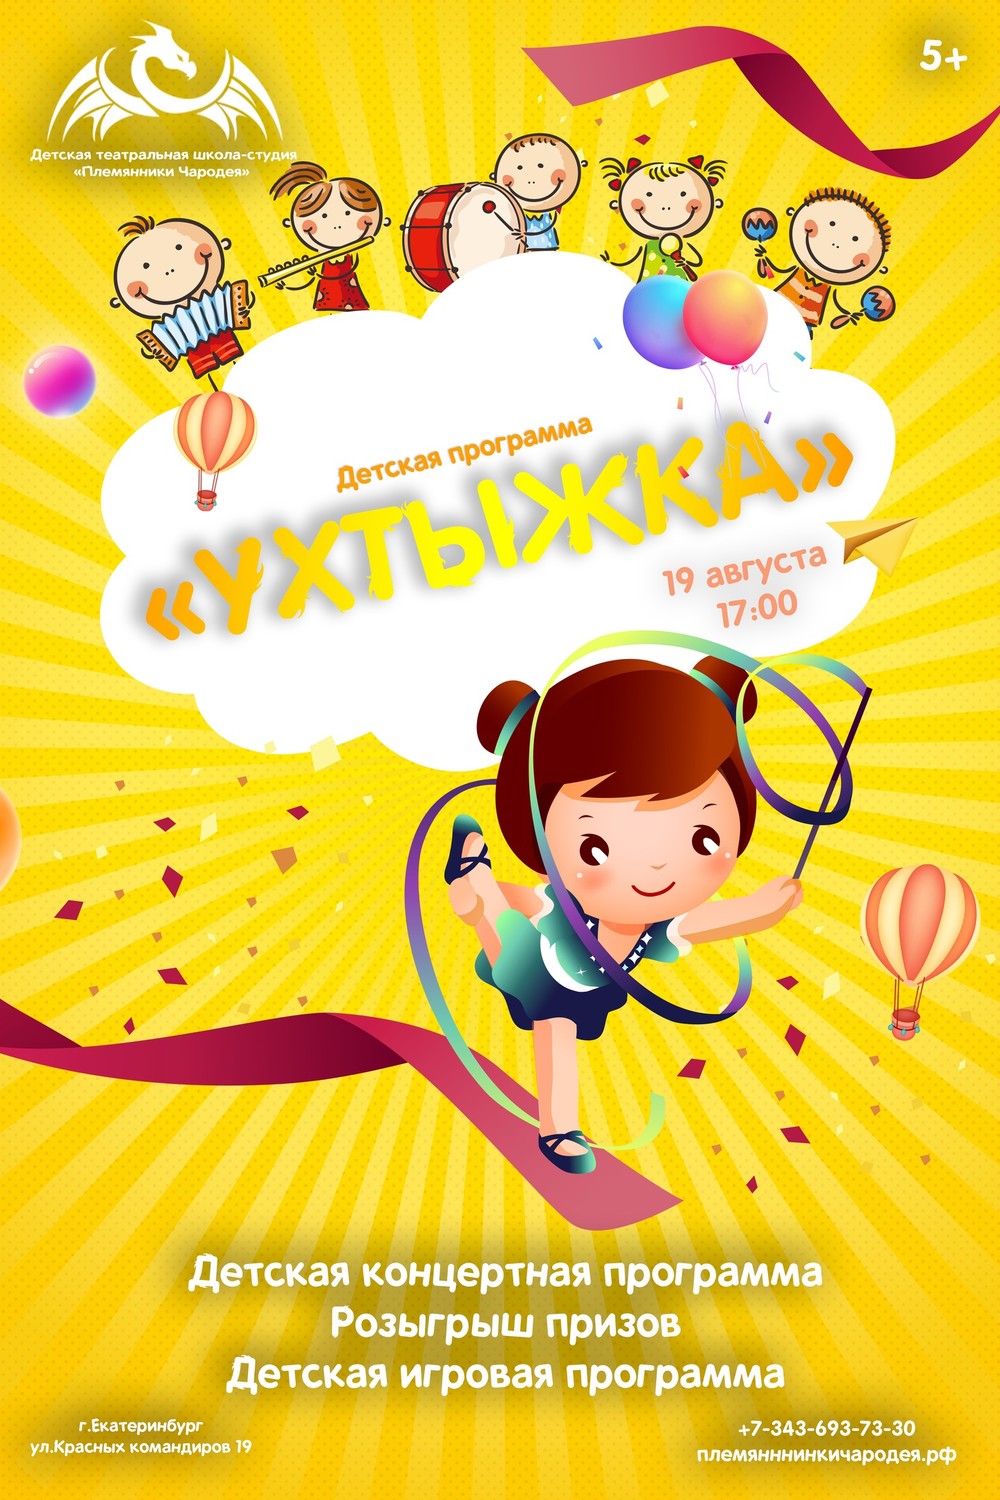 Приглашаем всех! Летний праздник на нашем крыльце в г.Екатеринбург( Красных командиров 19)